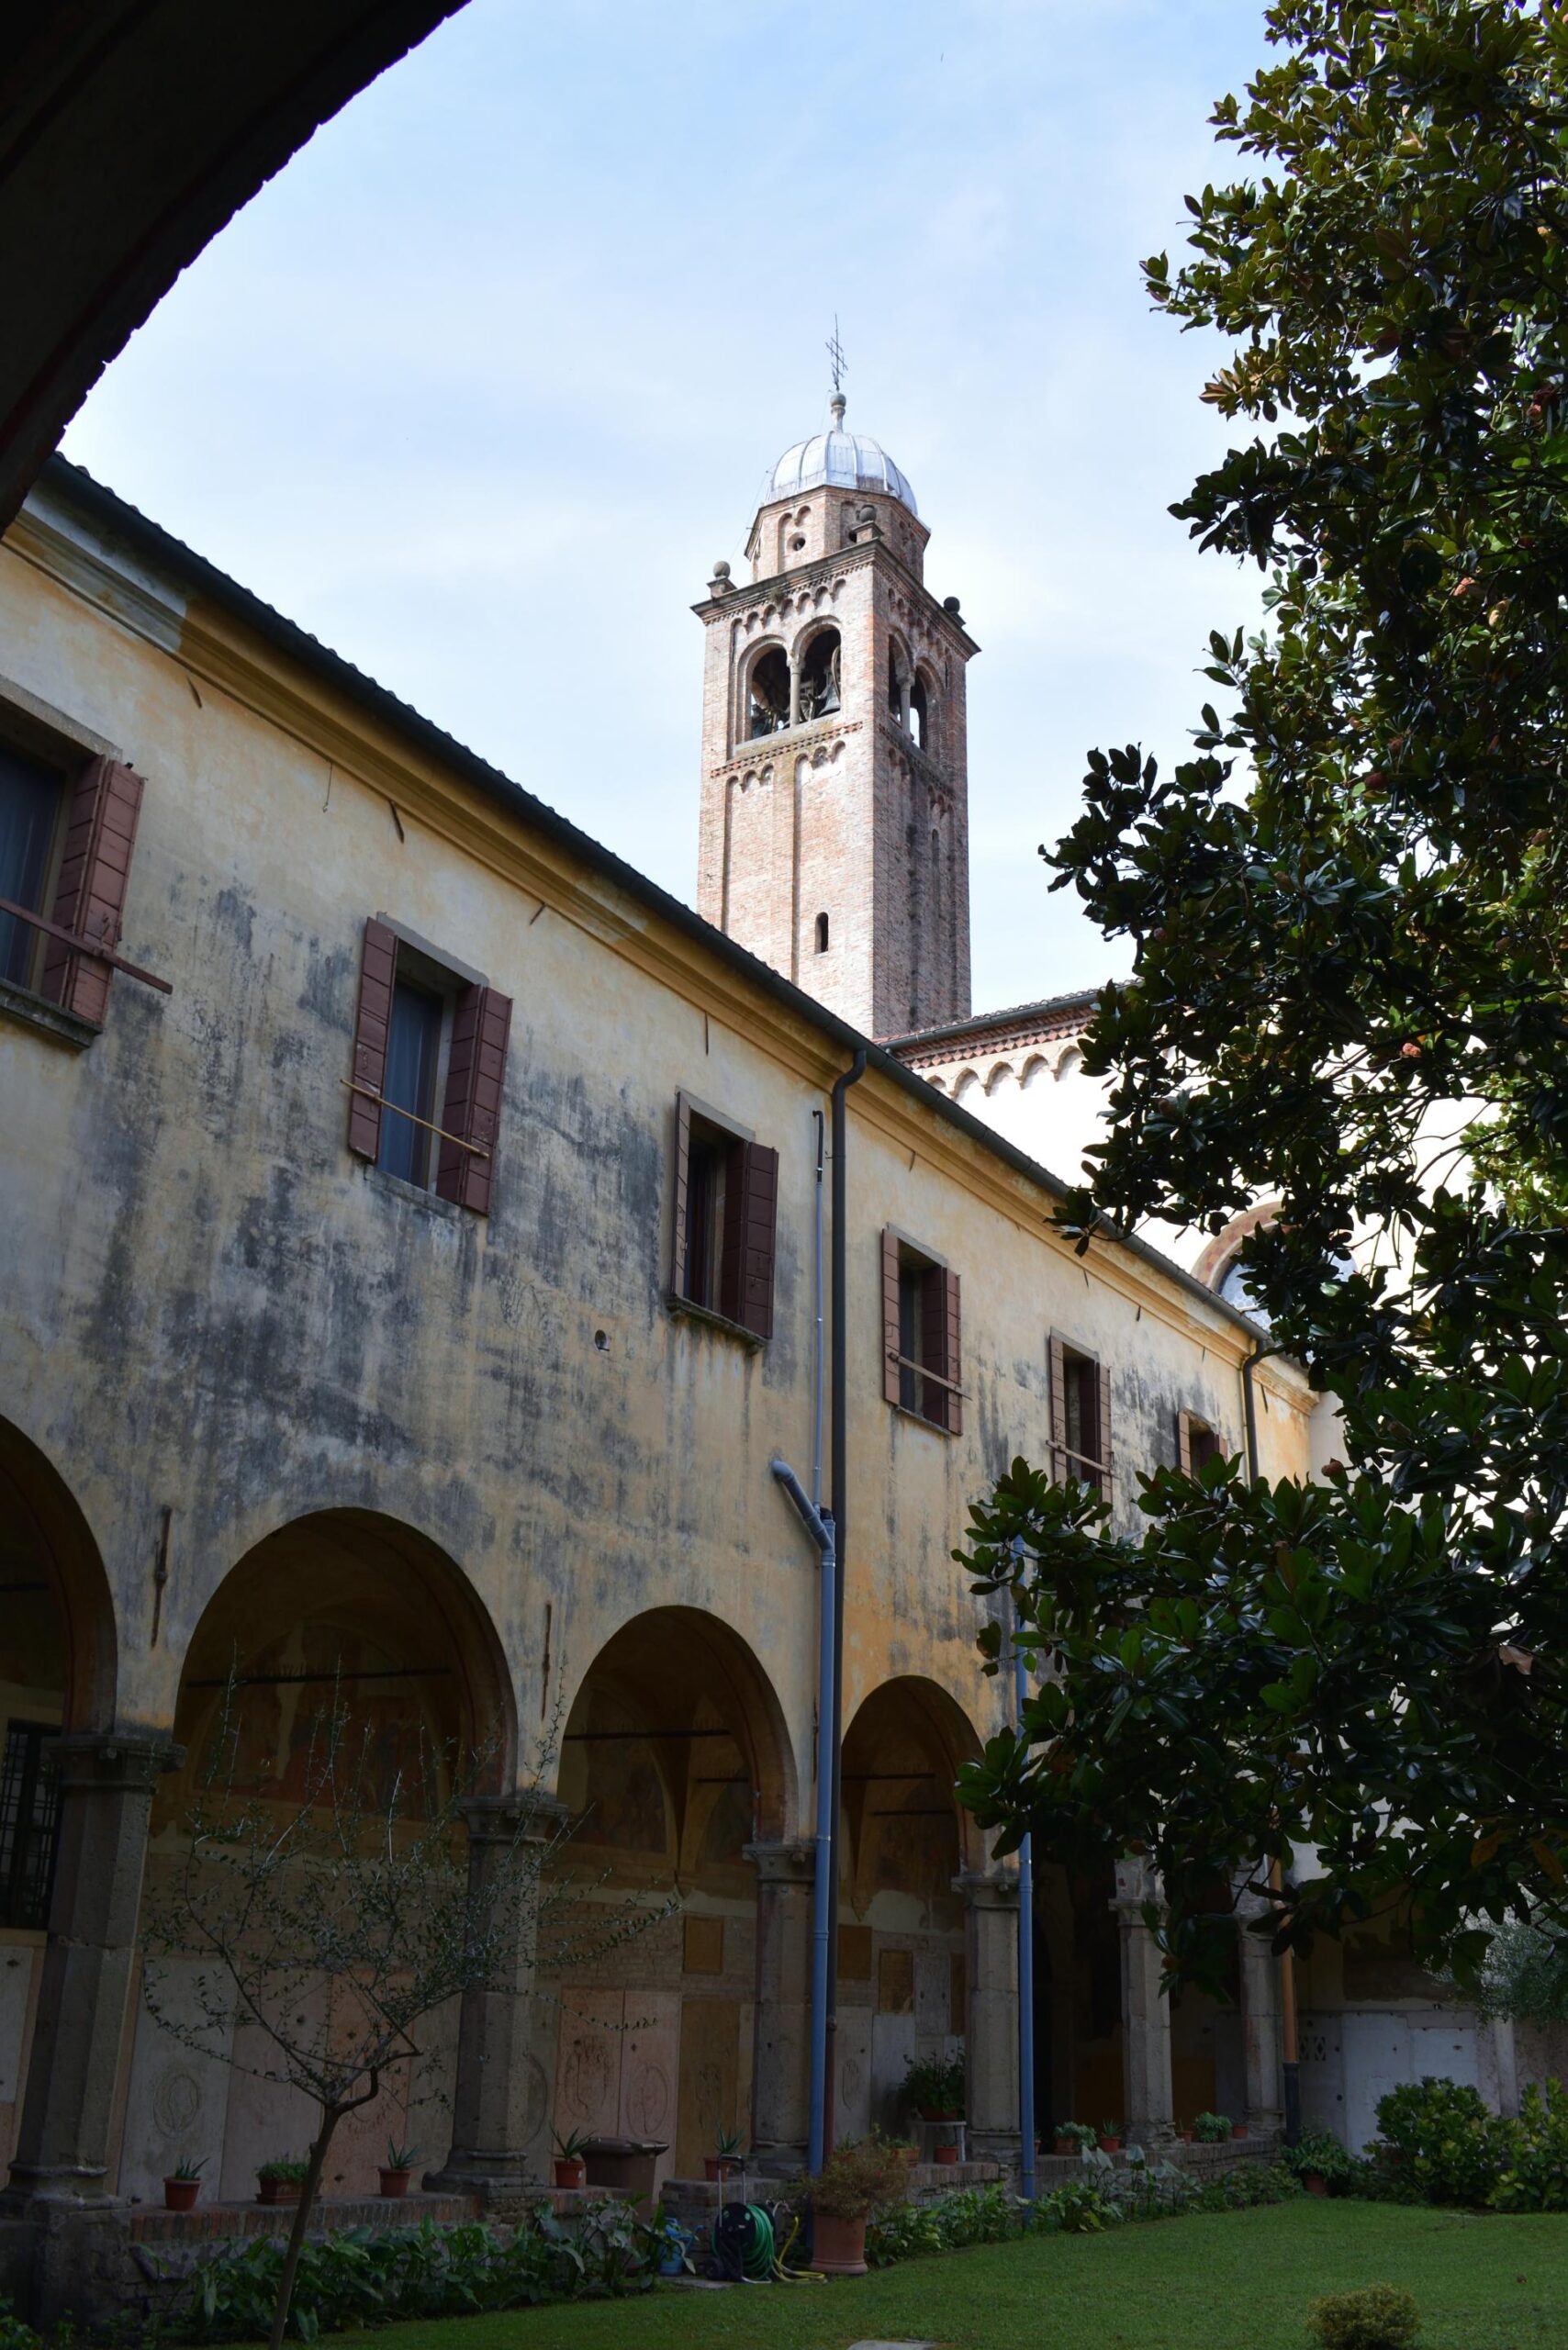 Campanile di San Francesco visto dal chiostro Sant'Antonio